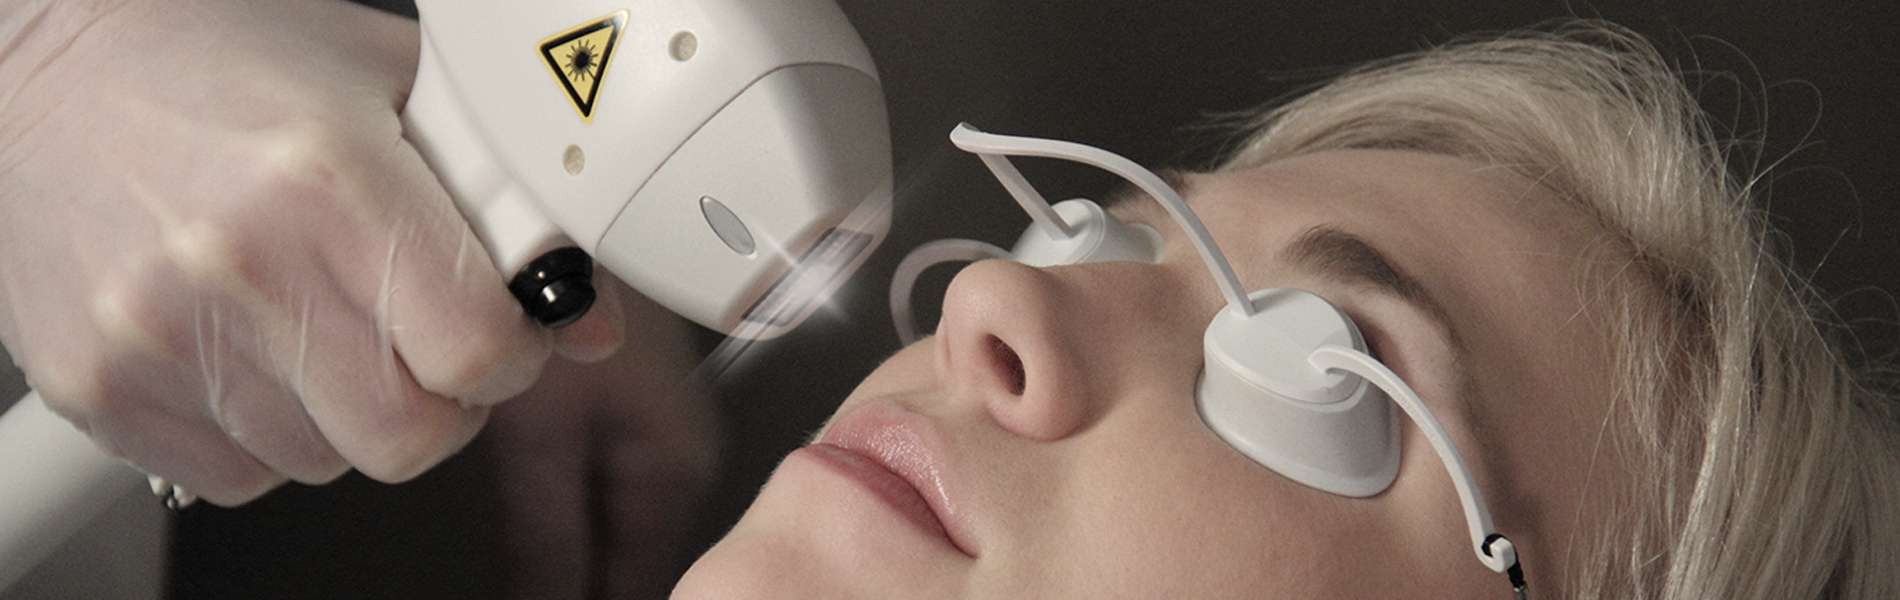 Protecteurs de globe oculaire pour la chirurgie au laser sur le visage du patient